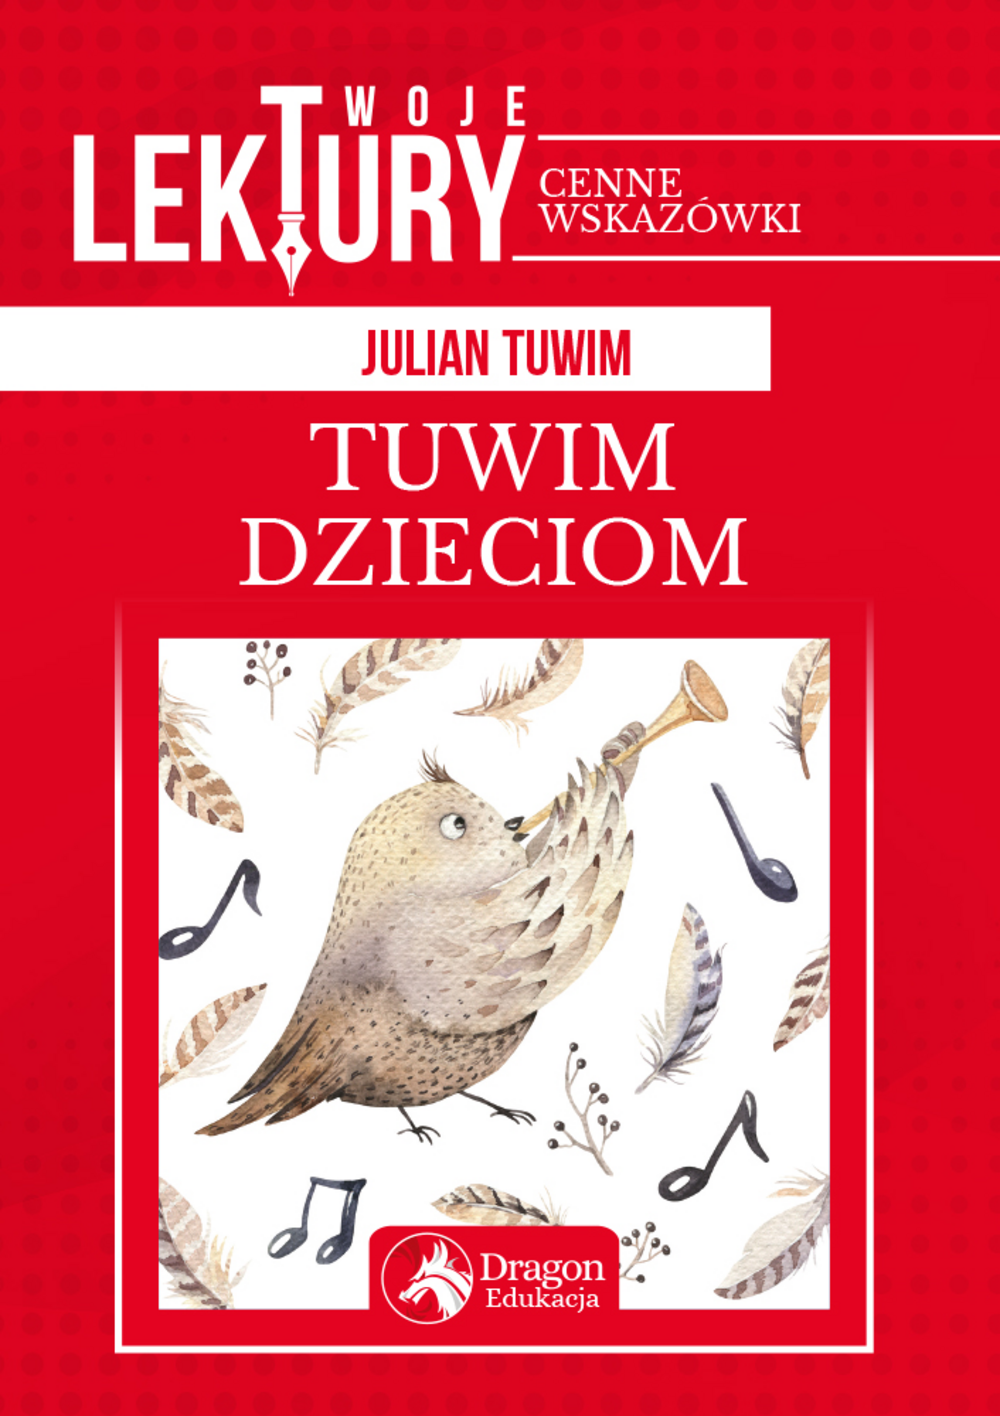 Julian Tuwim Oczy Mi Zamkniesz Tuwim dzieciom - Julian Tuwim | Multiszop.pl